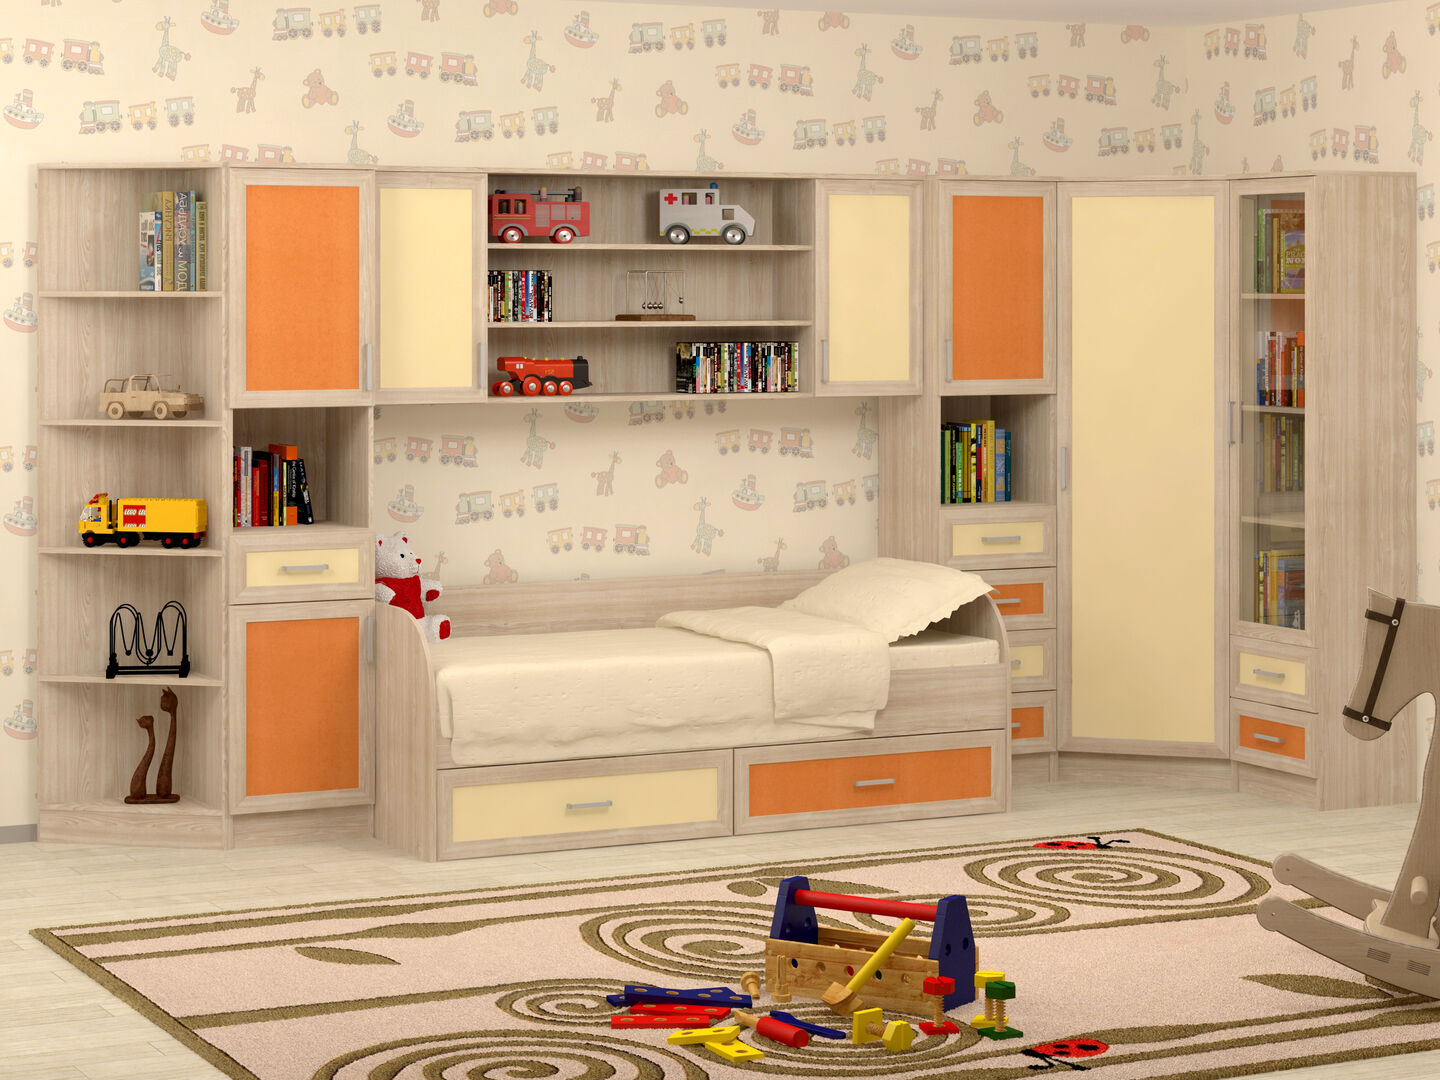 Модульная мебель для детской комнаты фабрики Стиль Гном-1